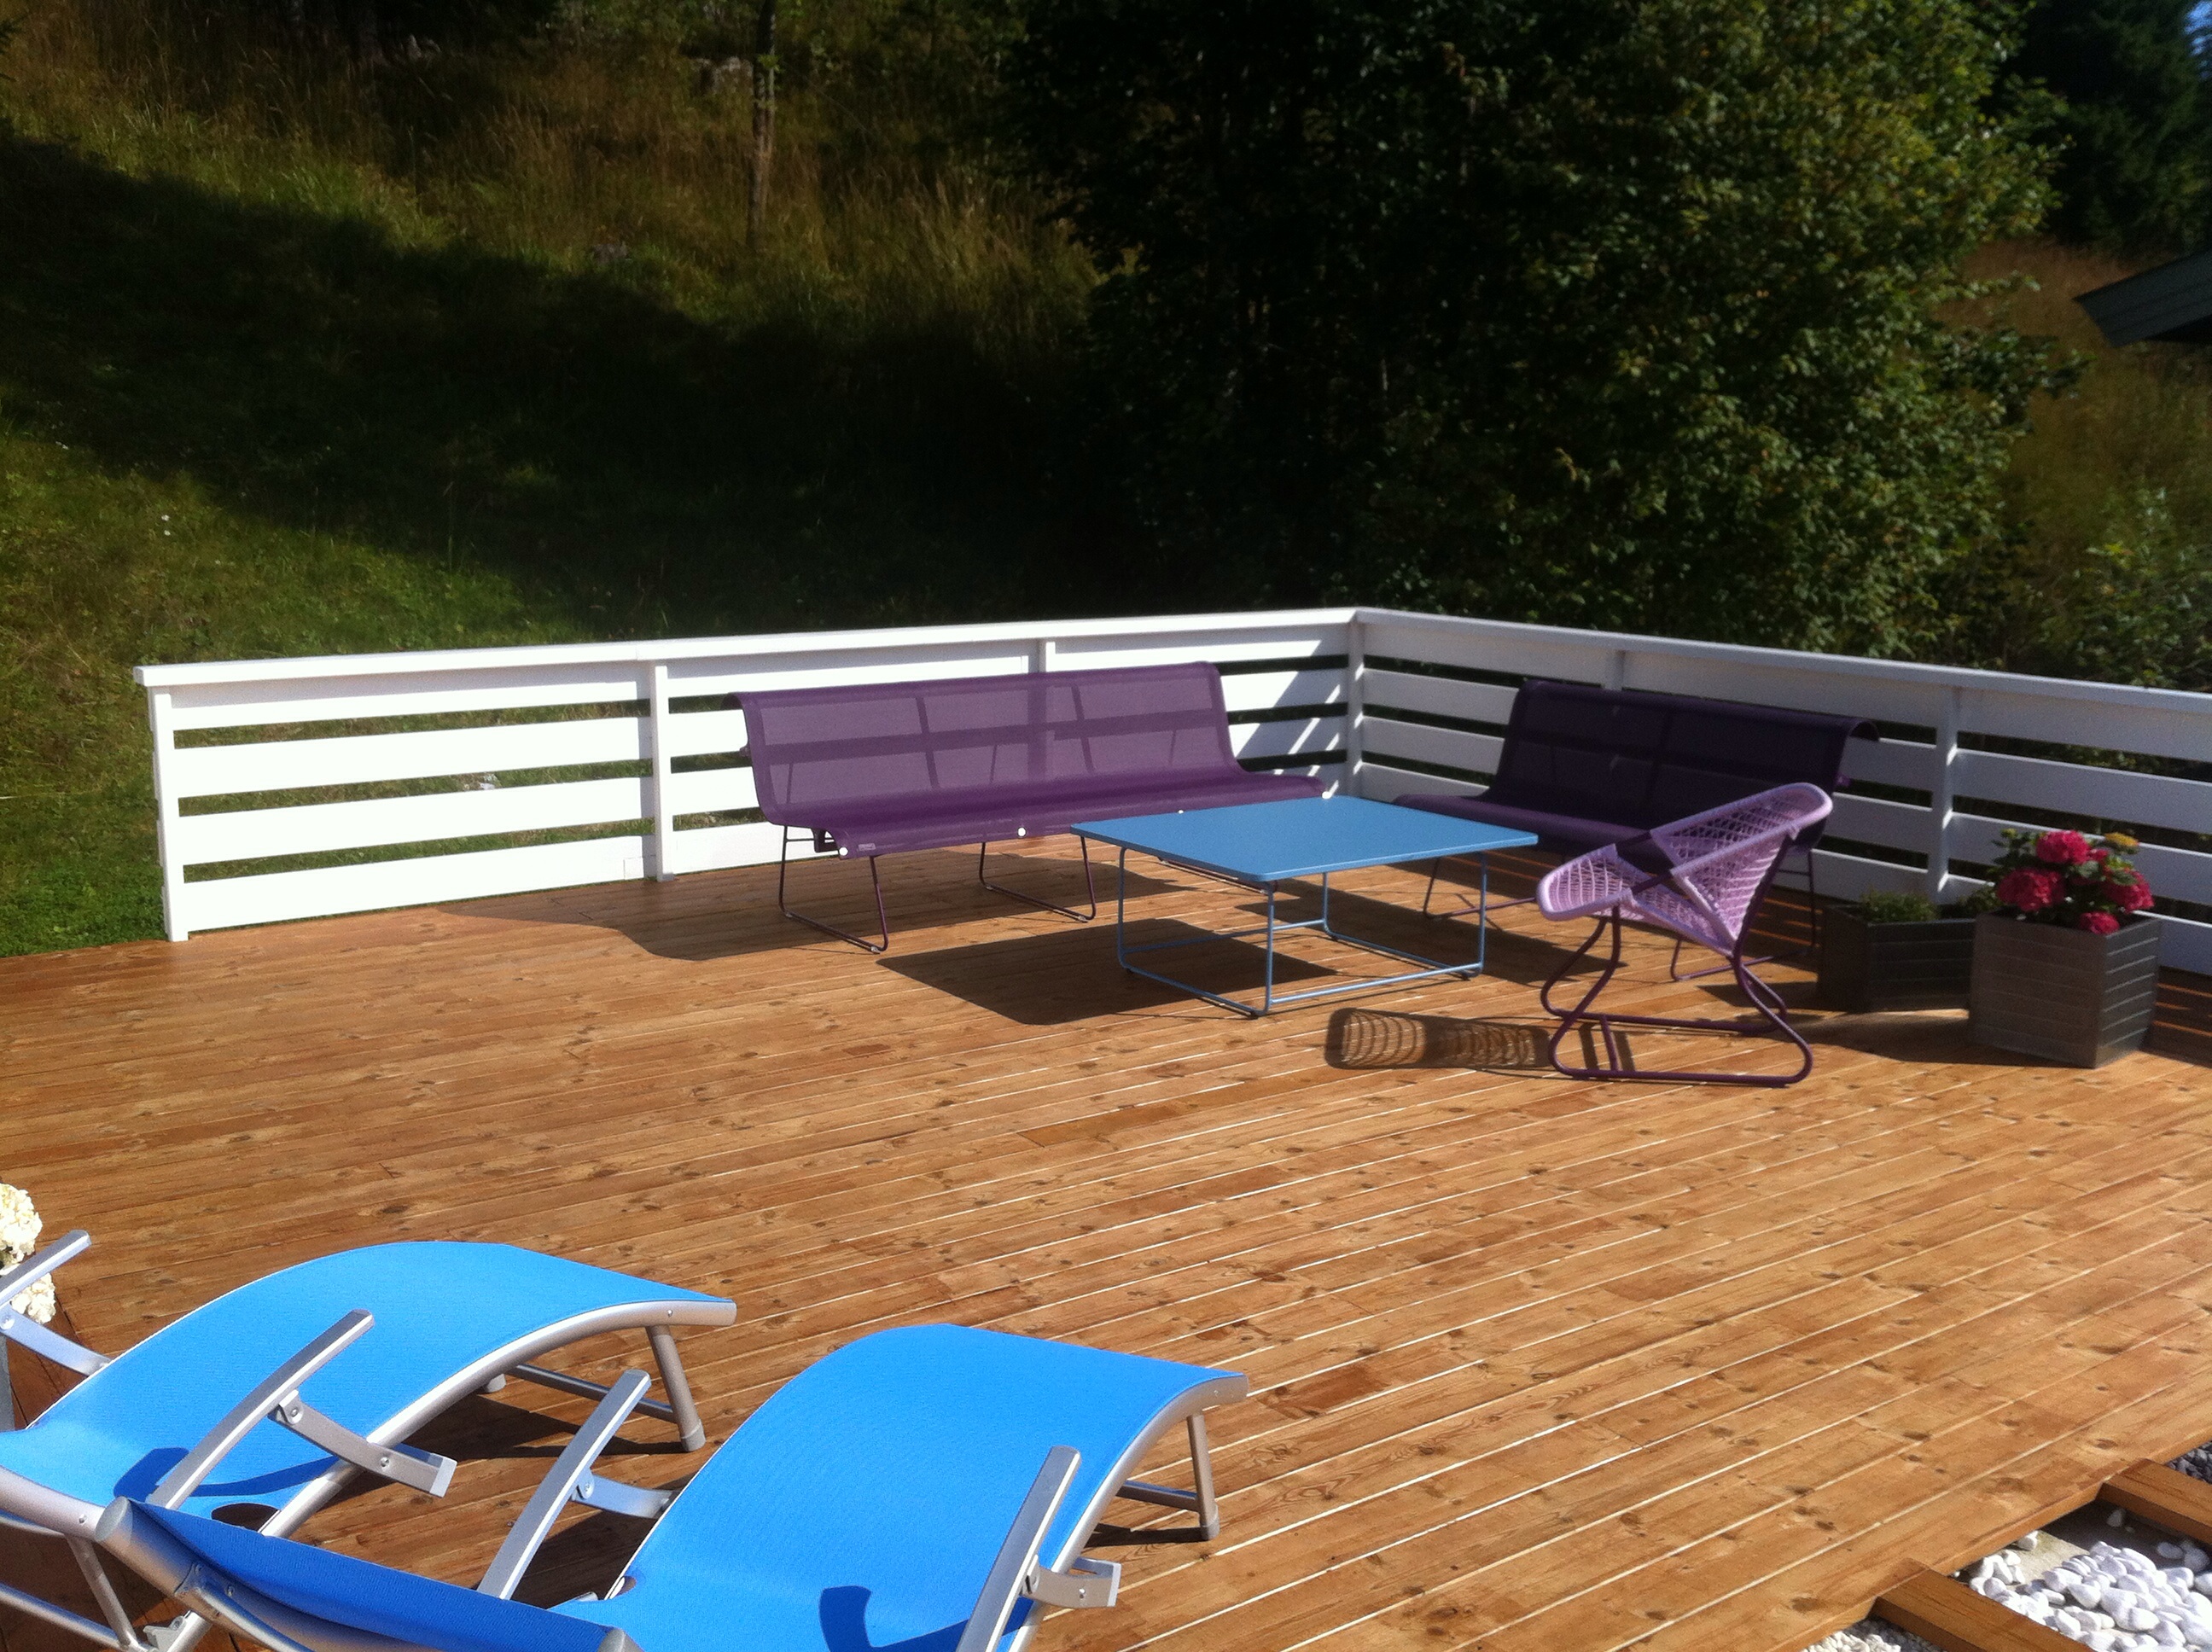 Vis meg din flotte terrasse/veranda - 2012-08-16T15-45-44_1.jpg - dagpa